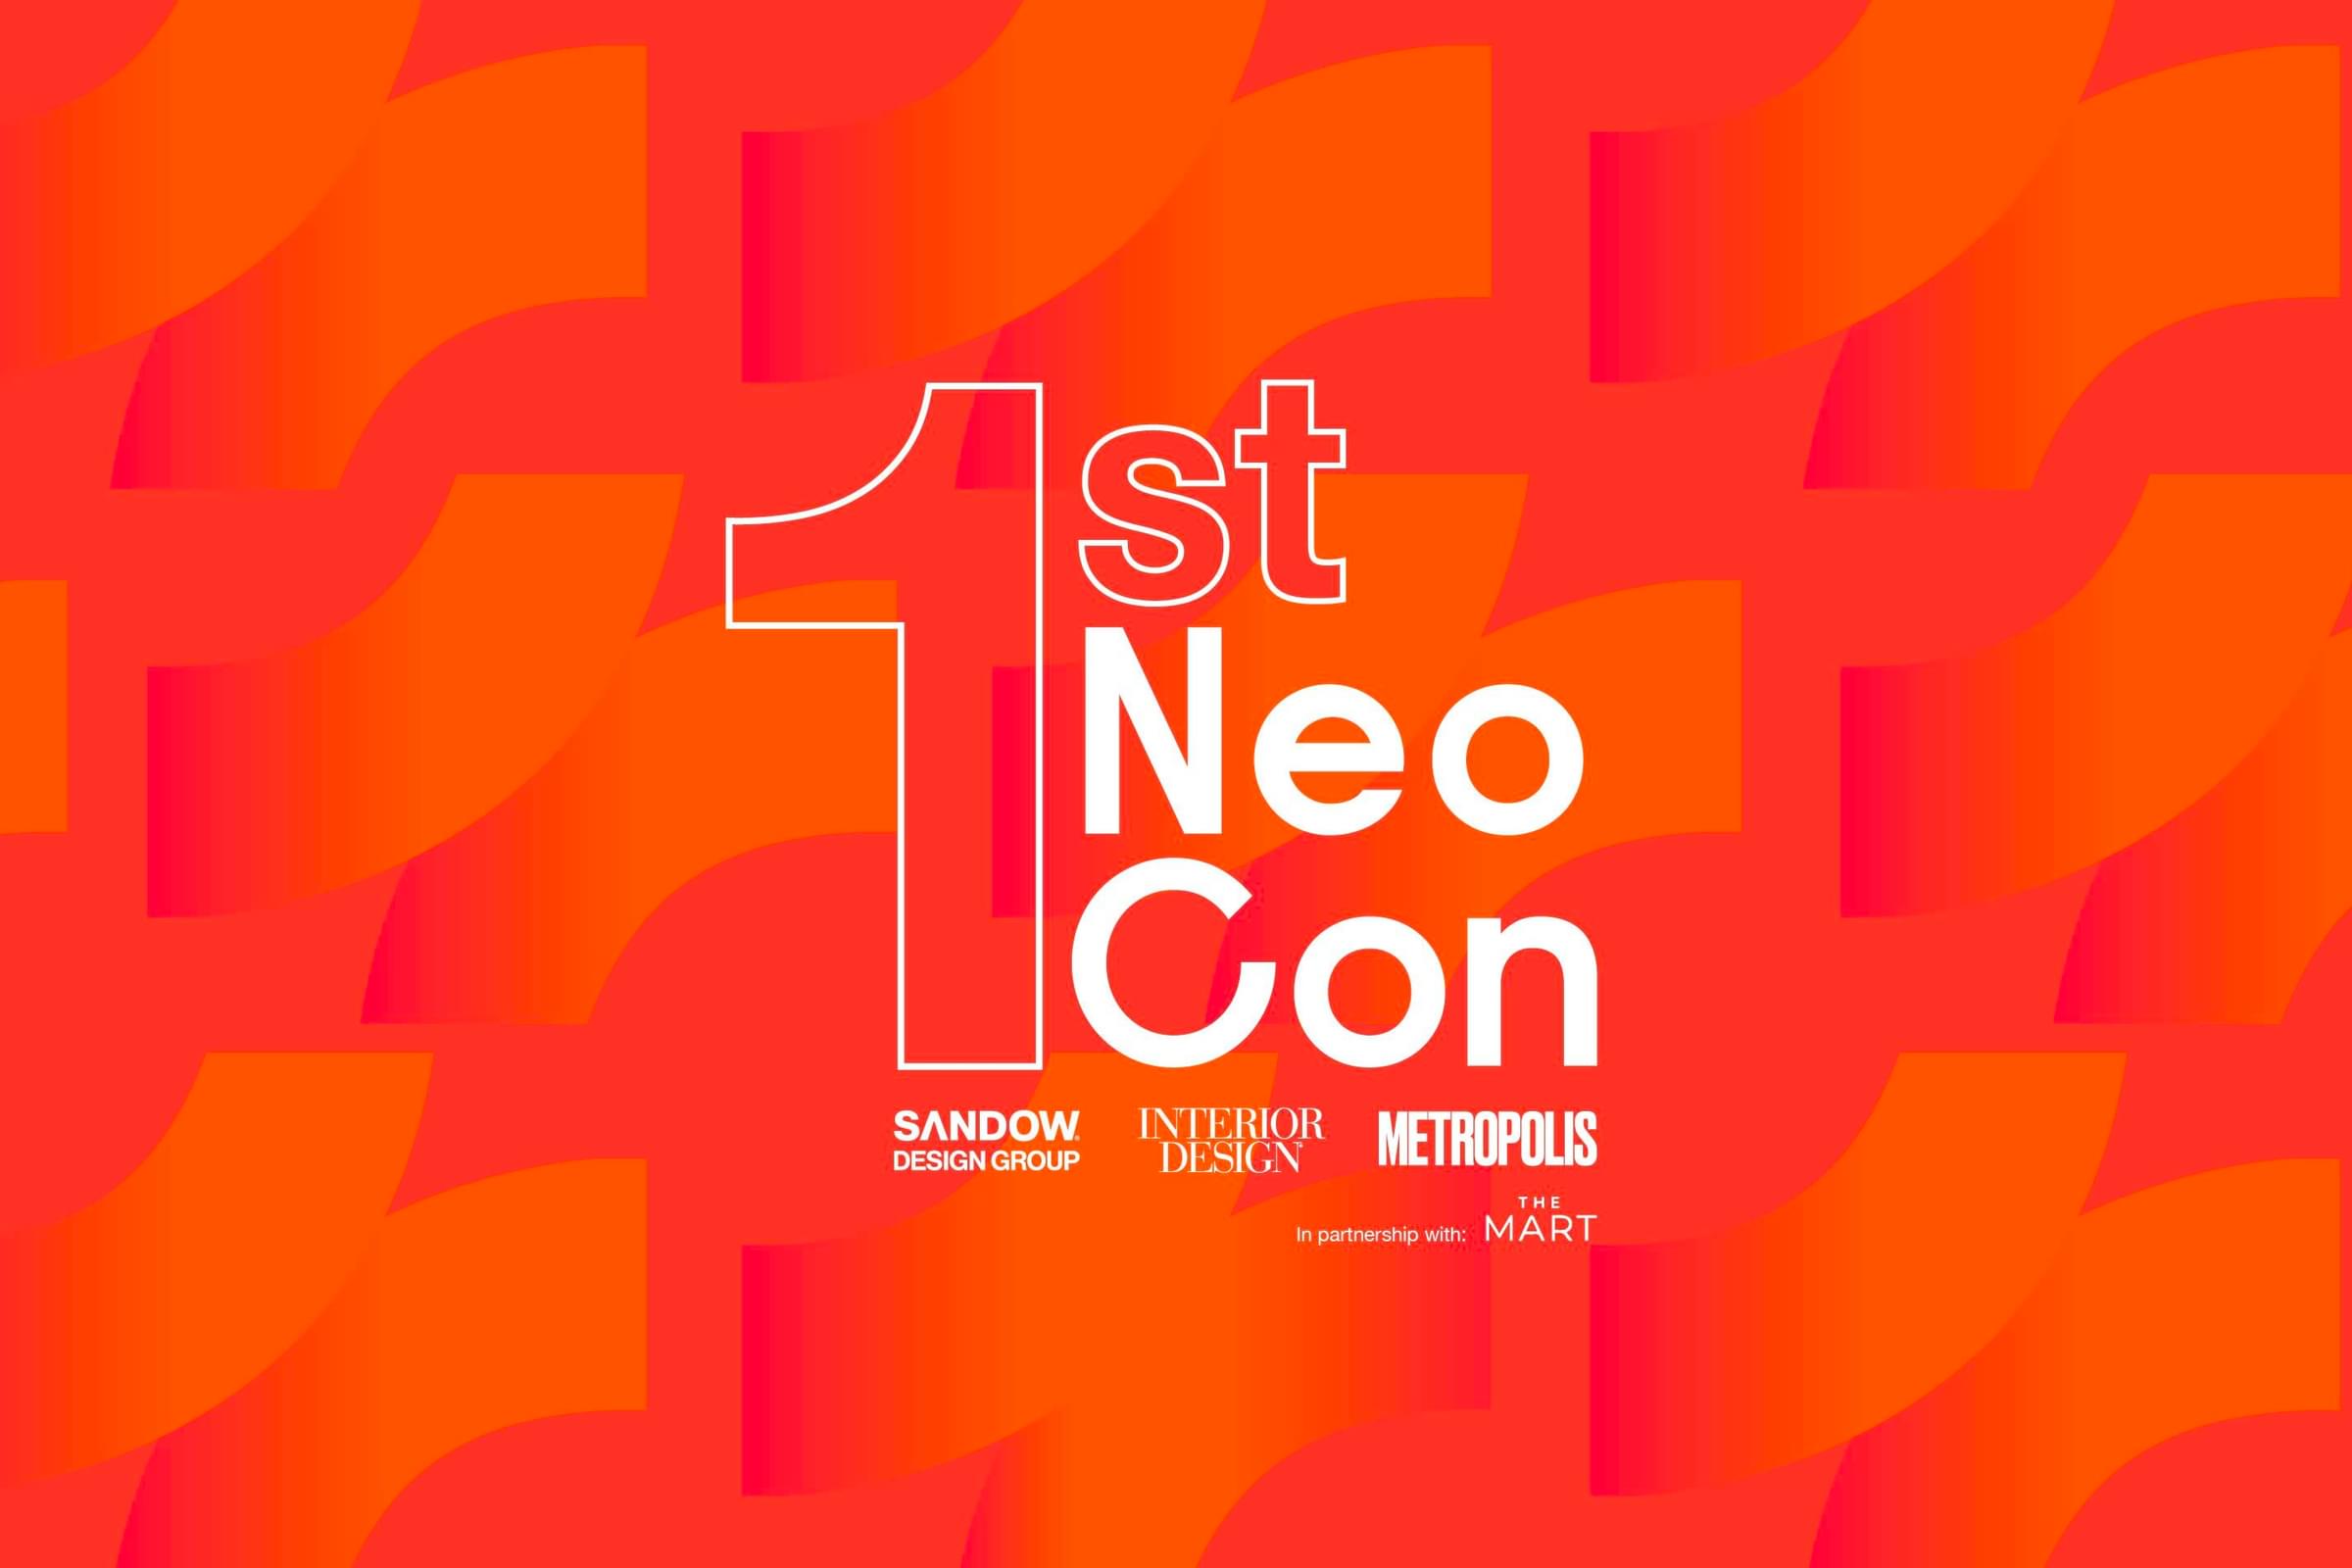 SANDOW DESIGN GROUP's First NeoCon